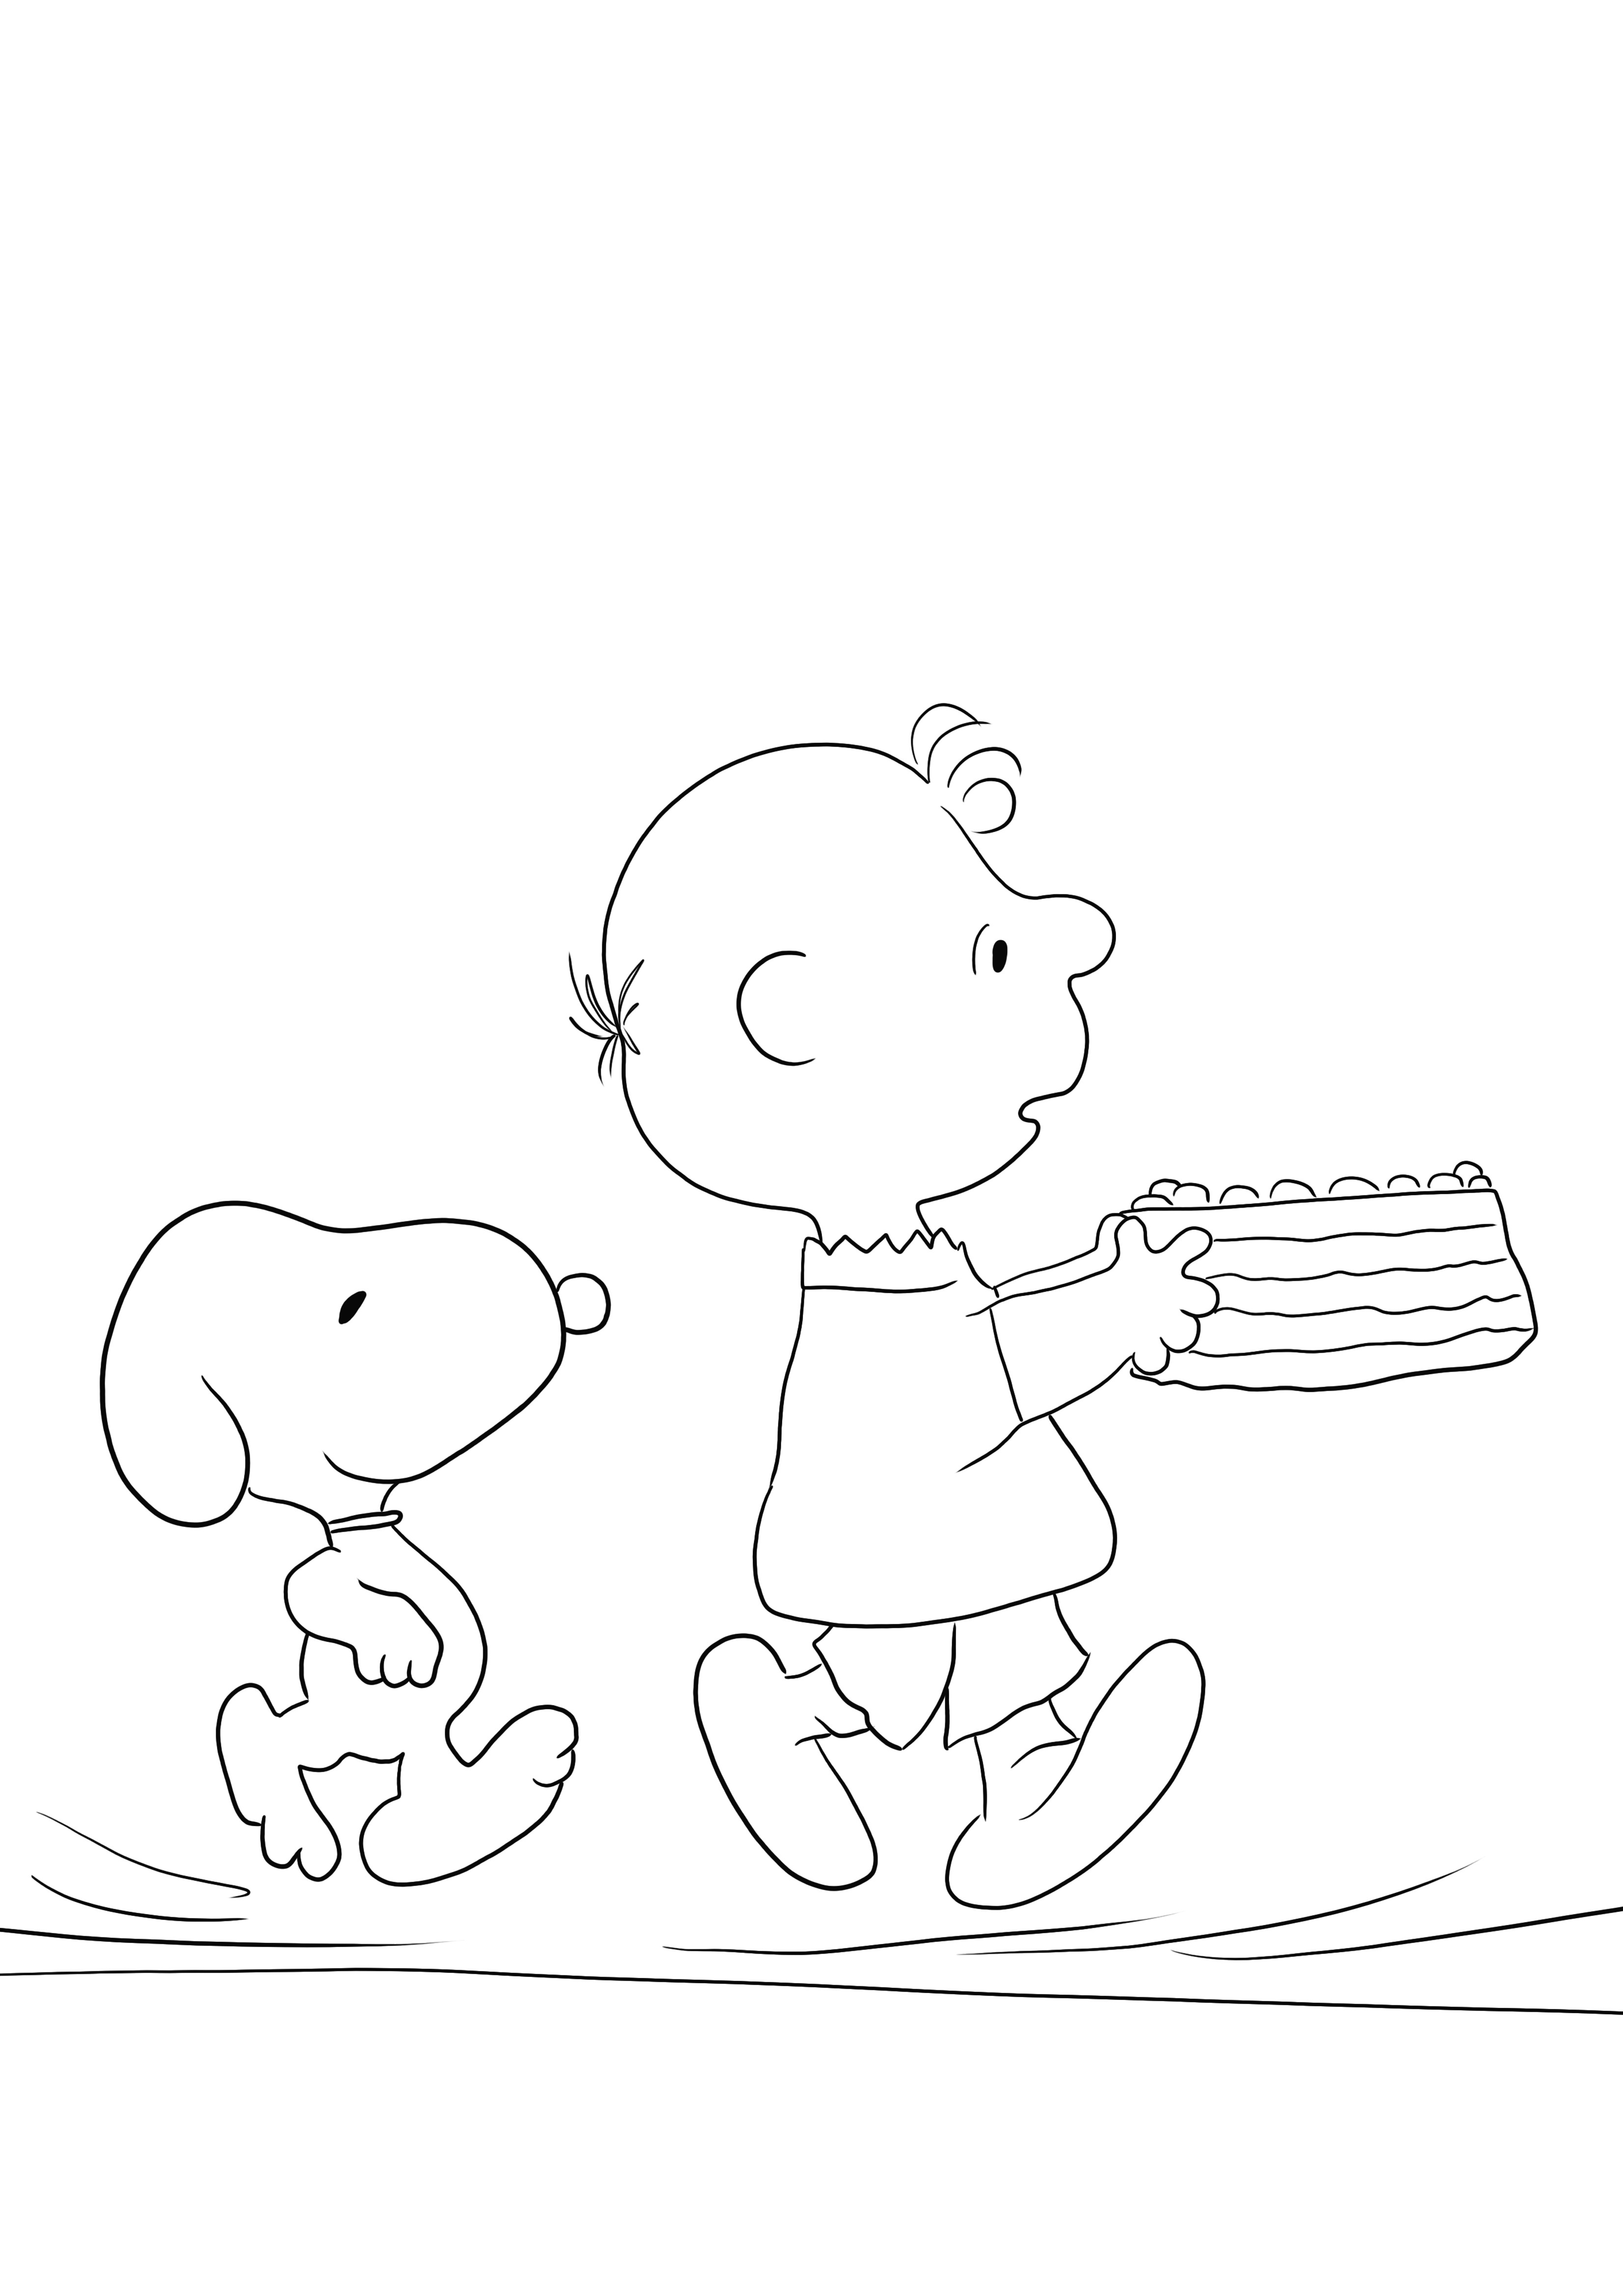 Egyszerű és ingyenesen nyomtatható színezőlap a Snoopy Birthdayről, hogy szórakoztatóan tanulhasson